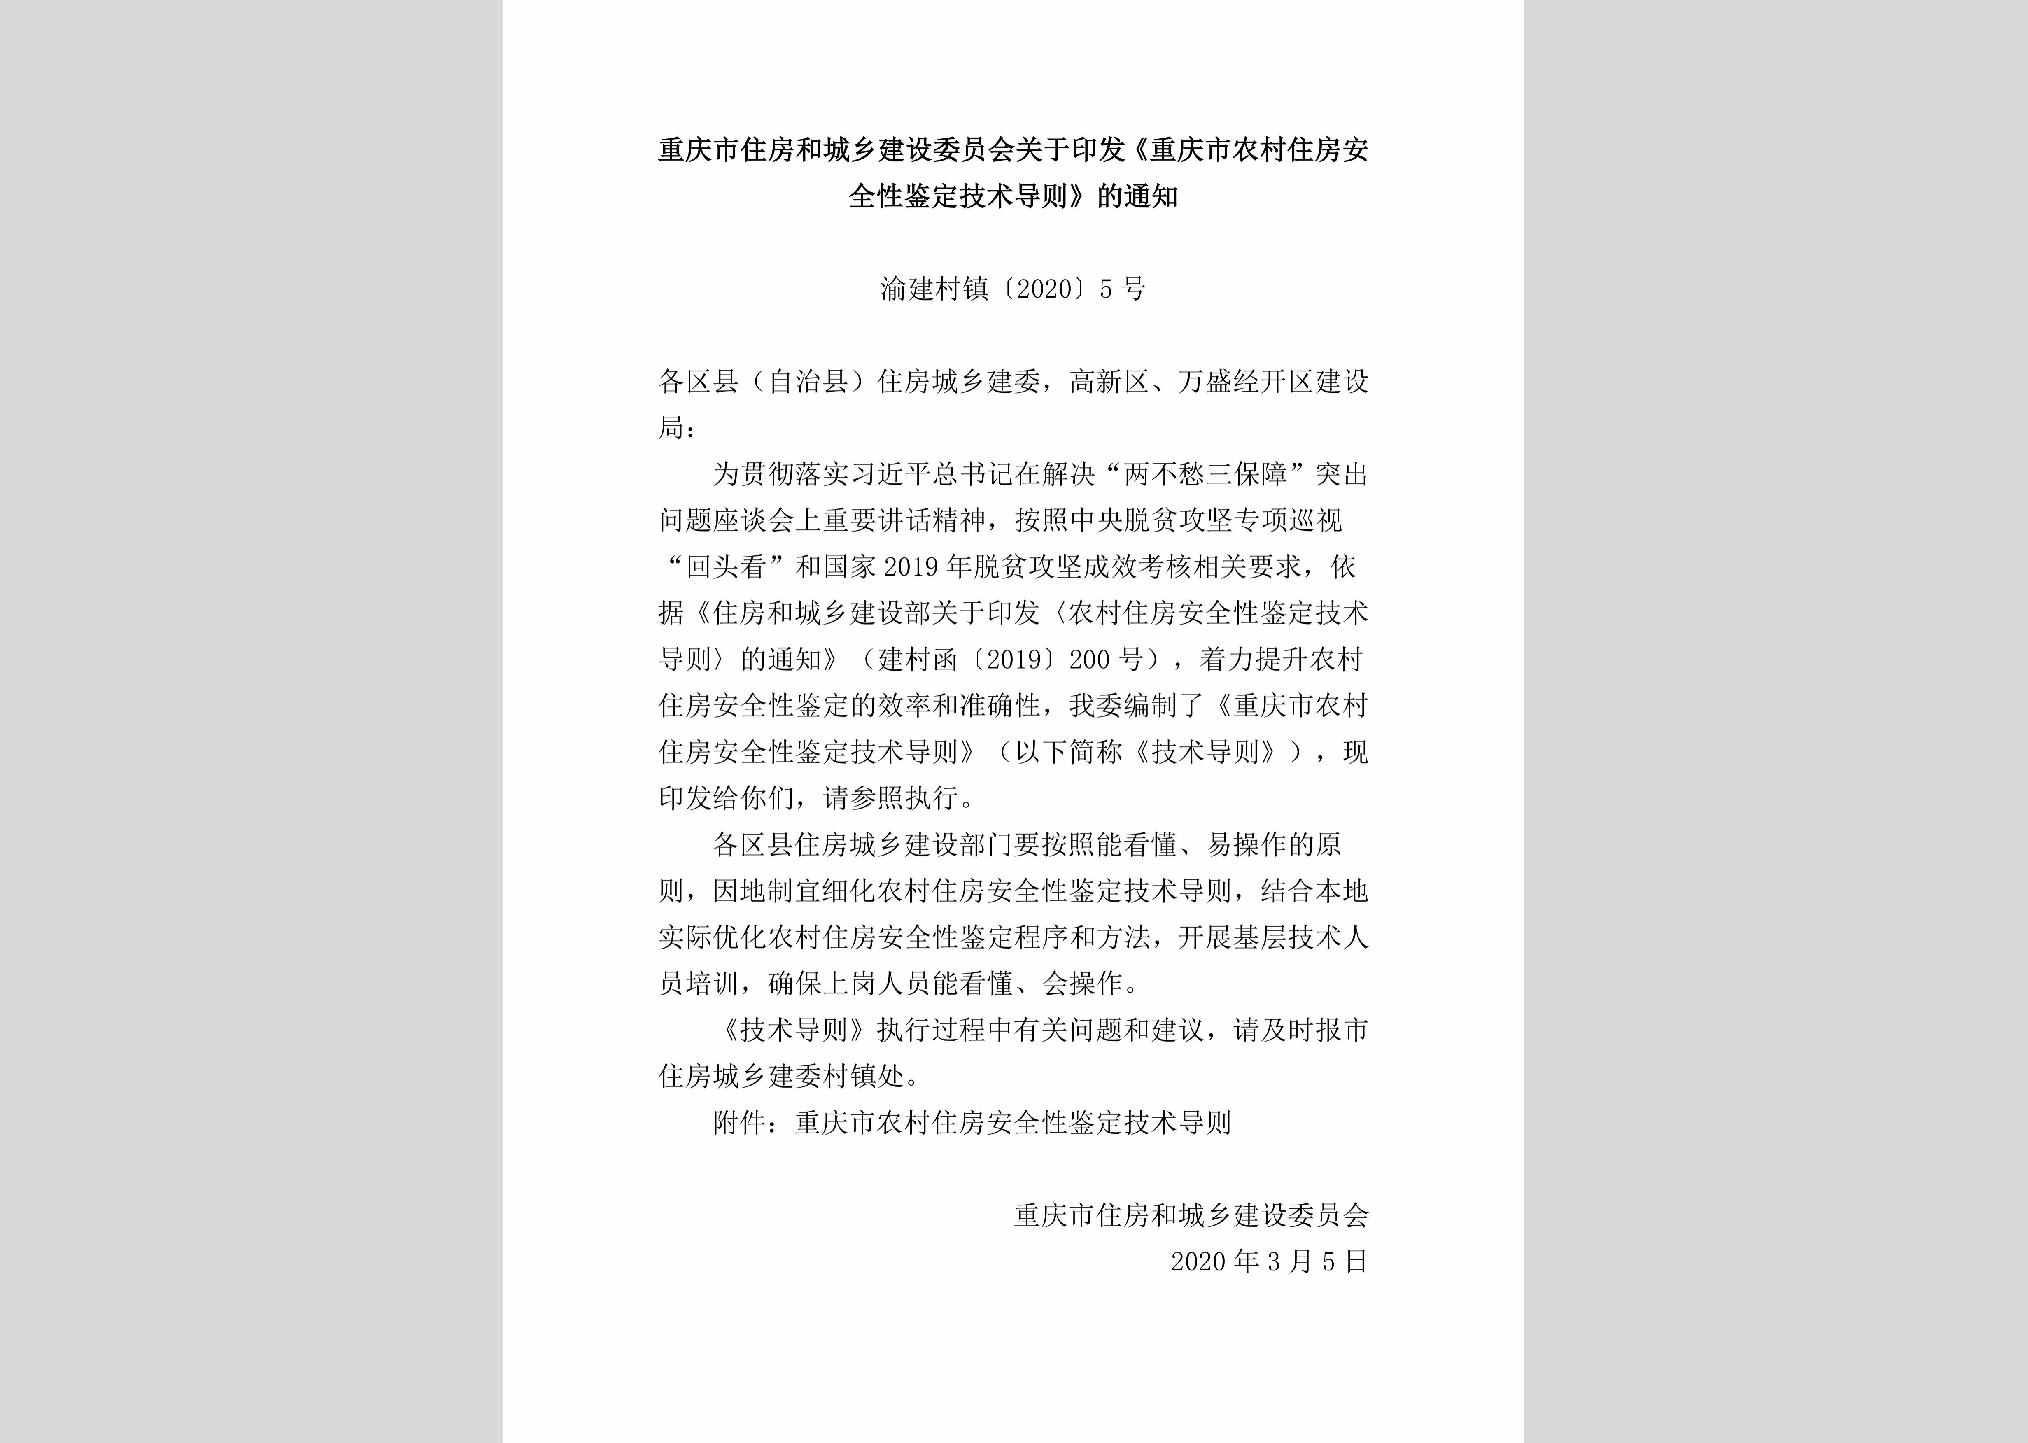 渝建村镇[2020]5号：重庆市住房和城乡建设委员会关于印发《重庆市农村住房安全性鉴定技术导则》的通知